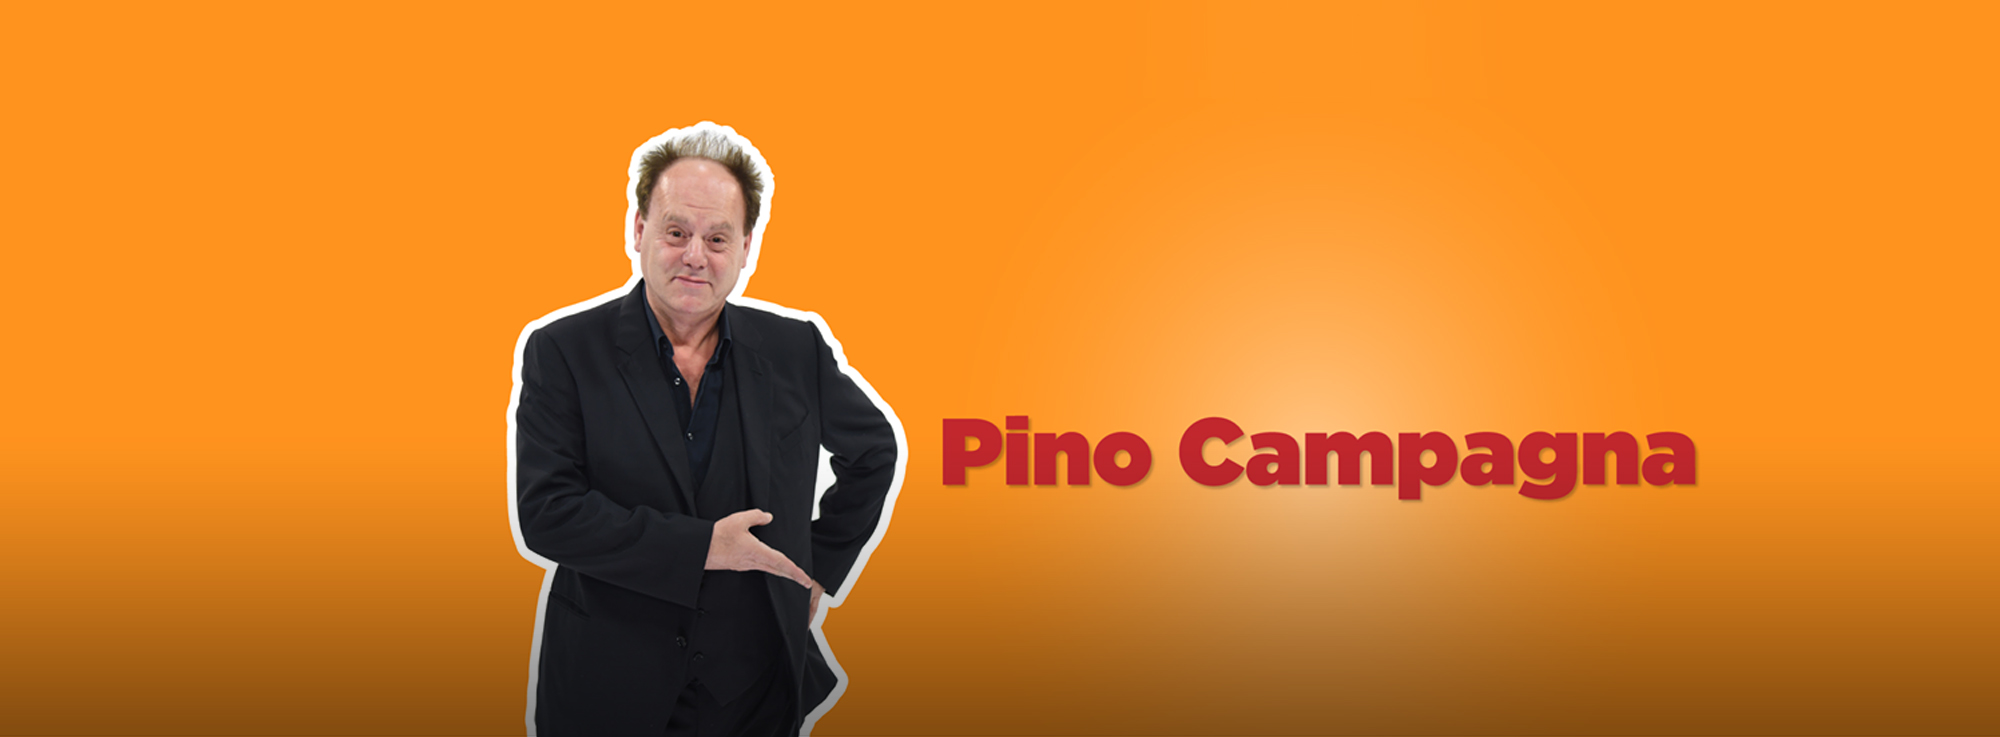 Carosino: Pino Campagna Show